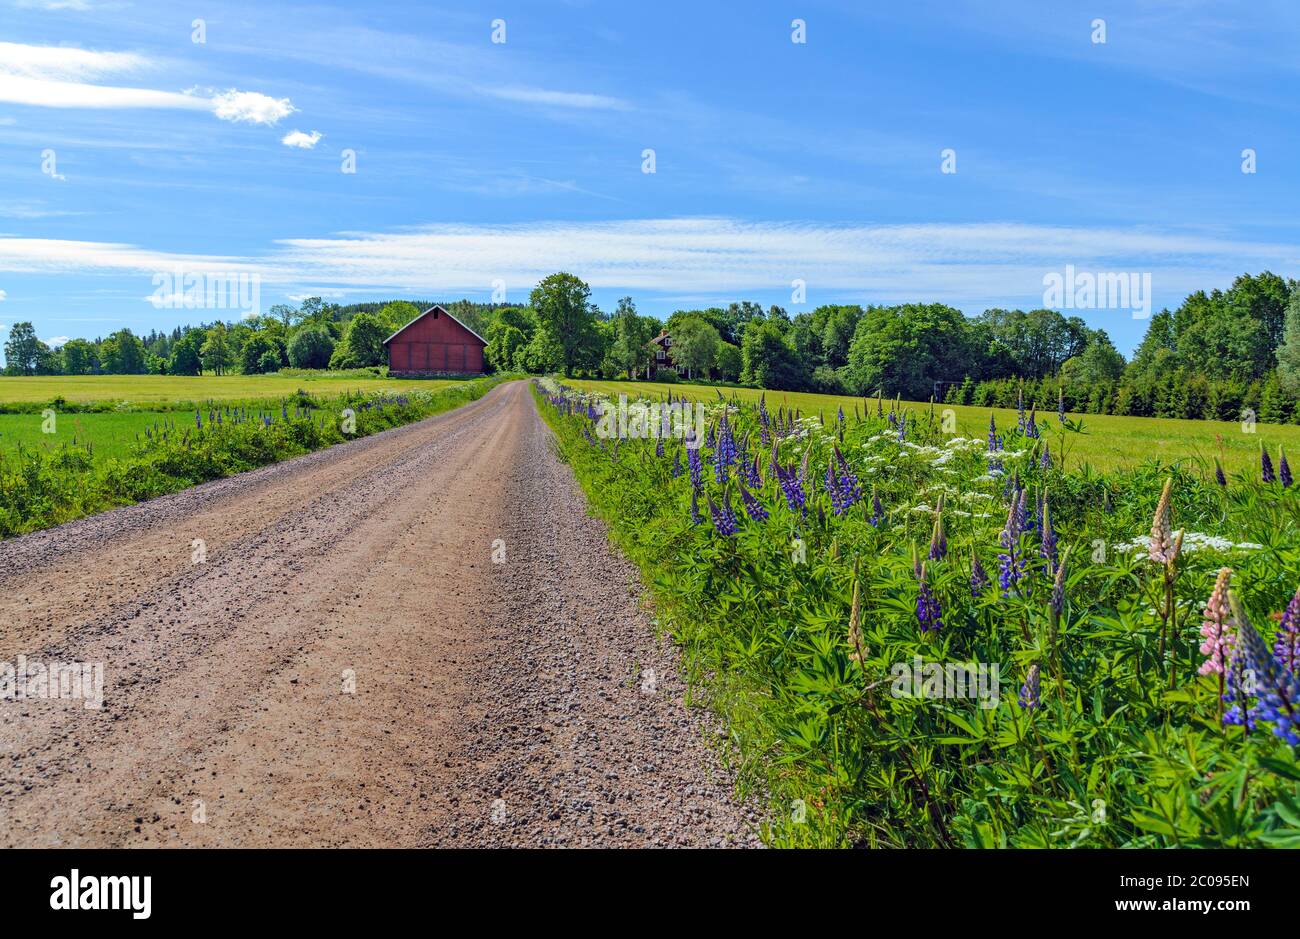 Schotterstraße, die durch eine blühende sommerliche Farmlandschaft in Schweden führt Stockfoto